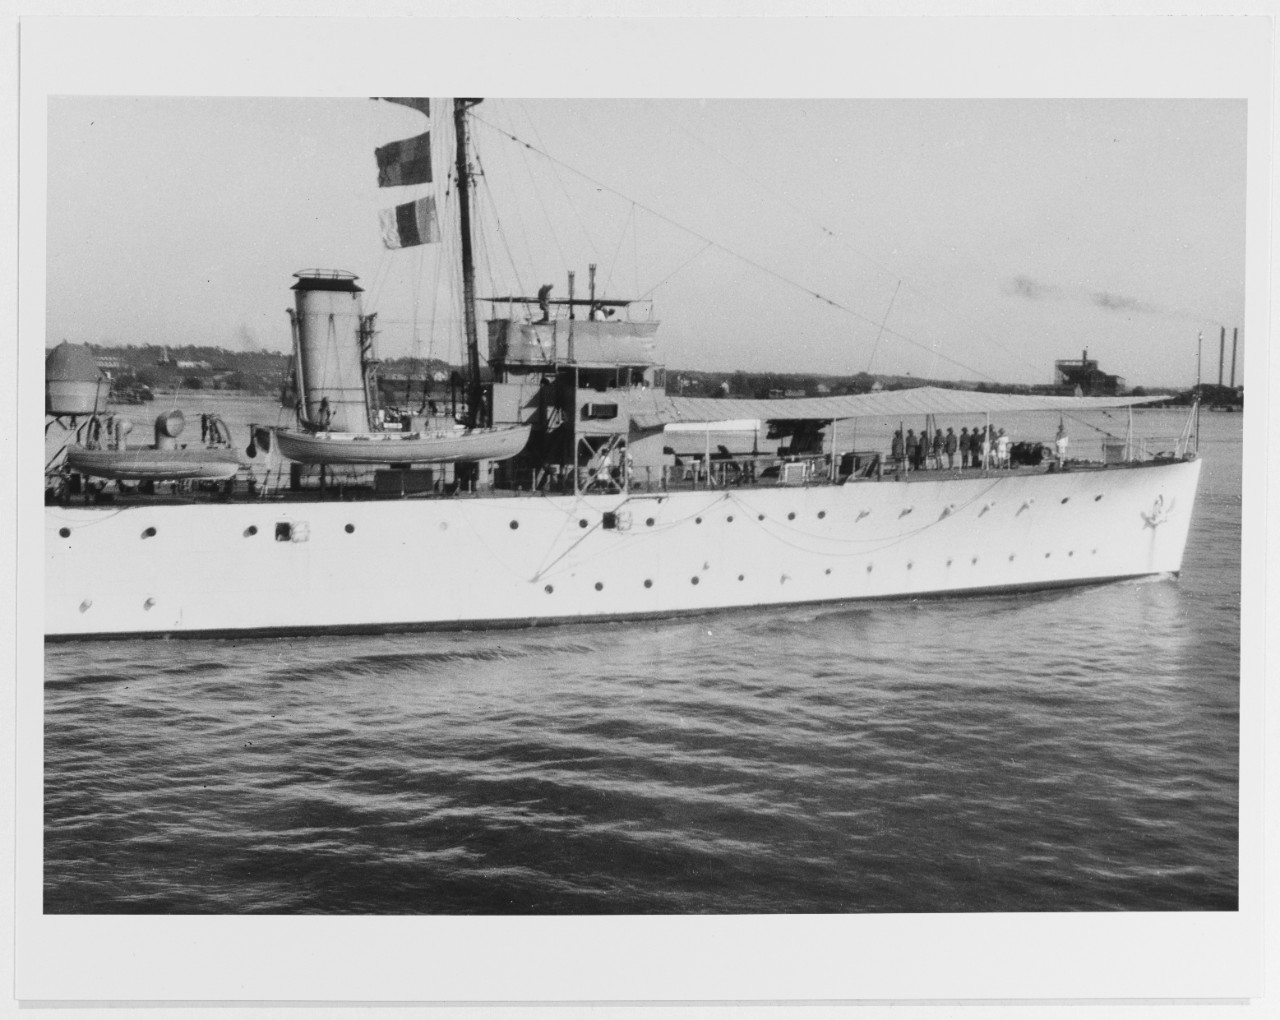 HMS SANDWICH (British sloop, 1928)